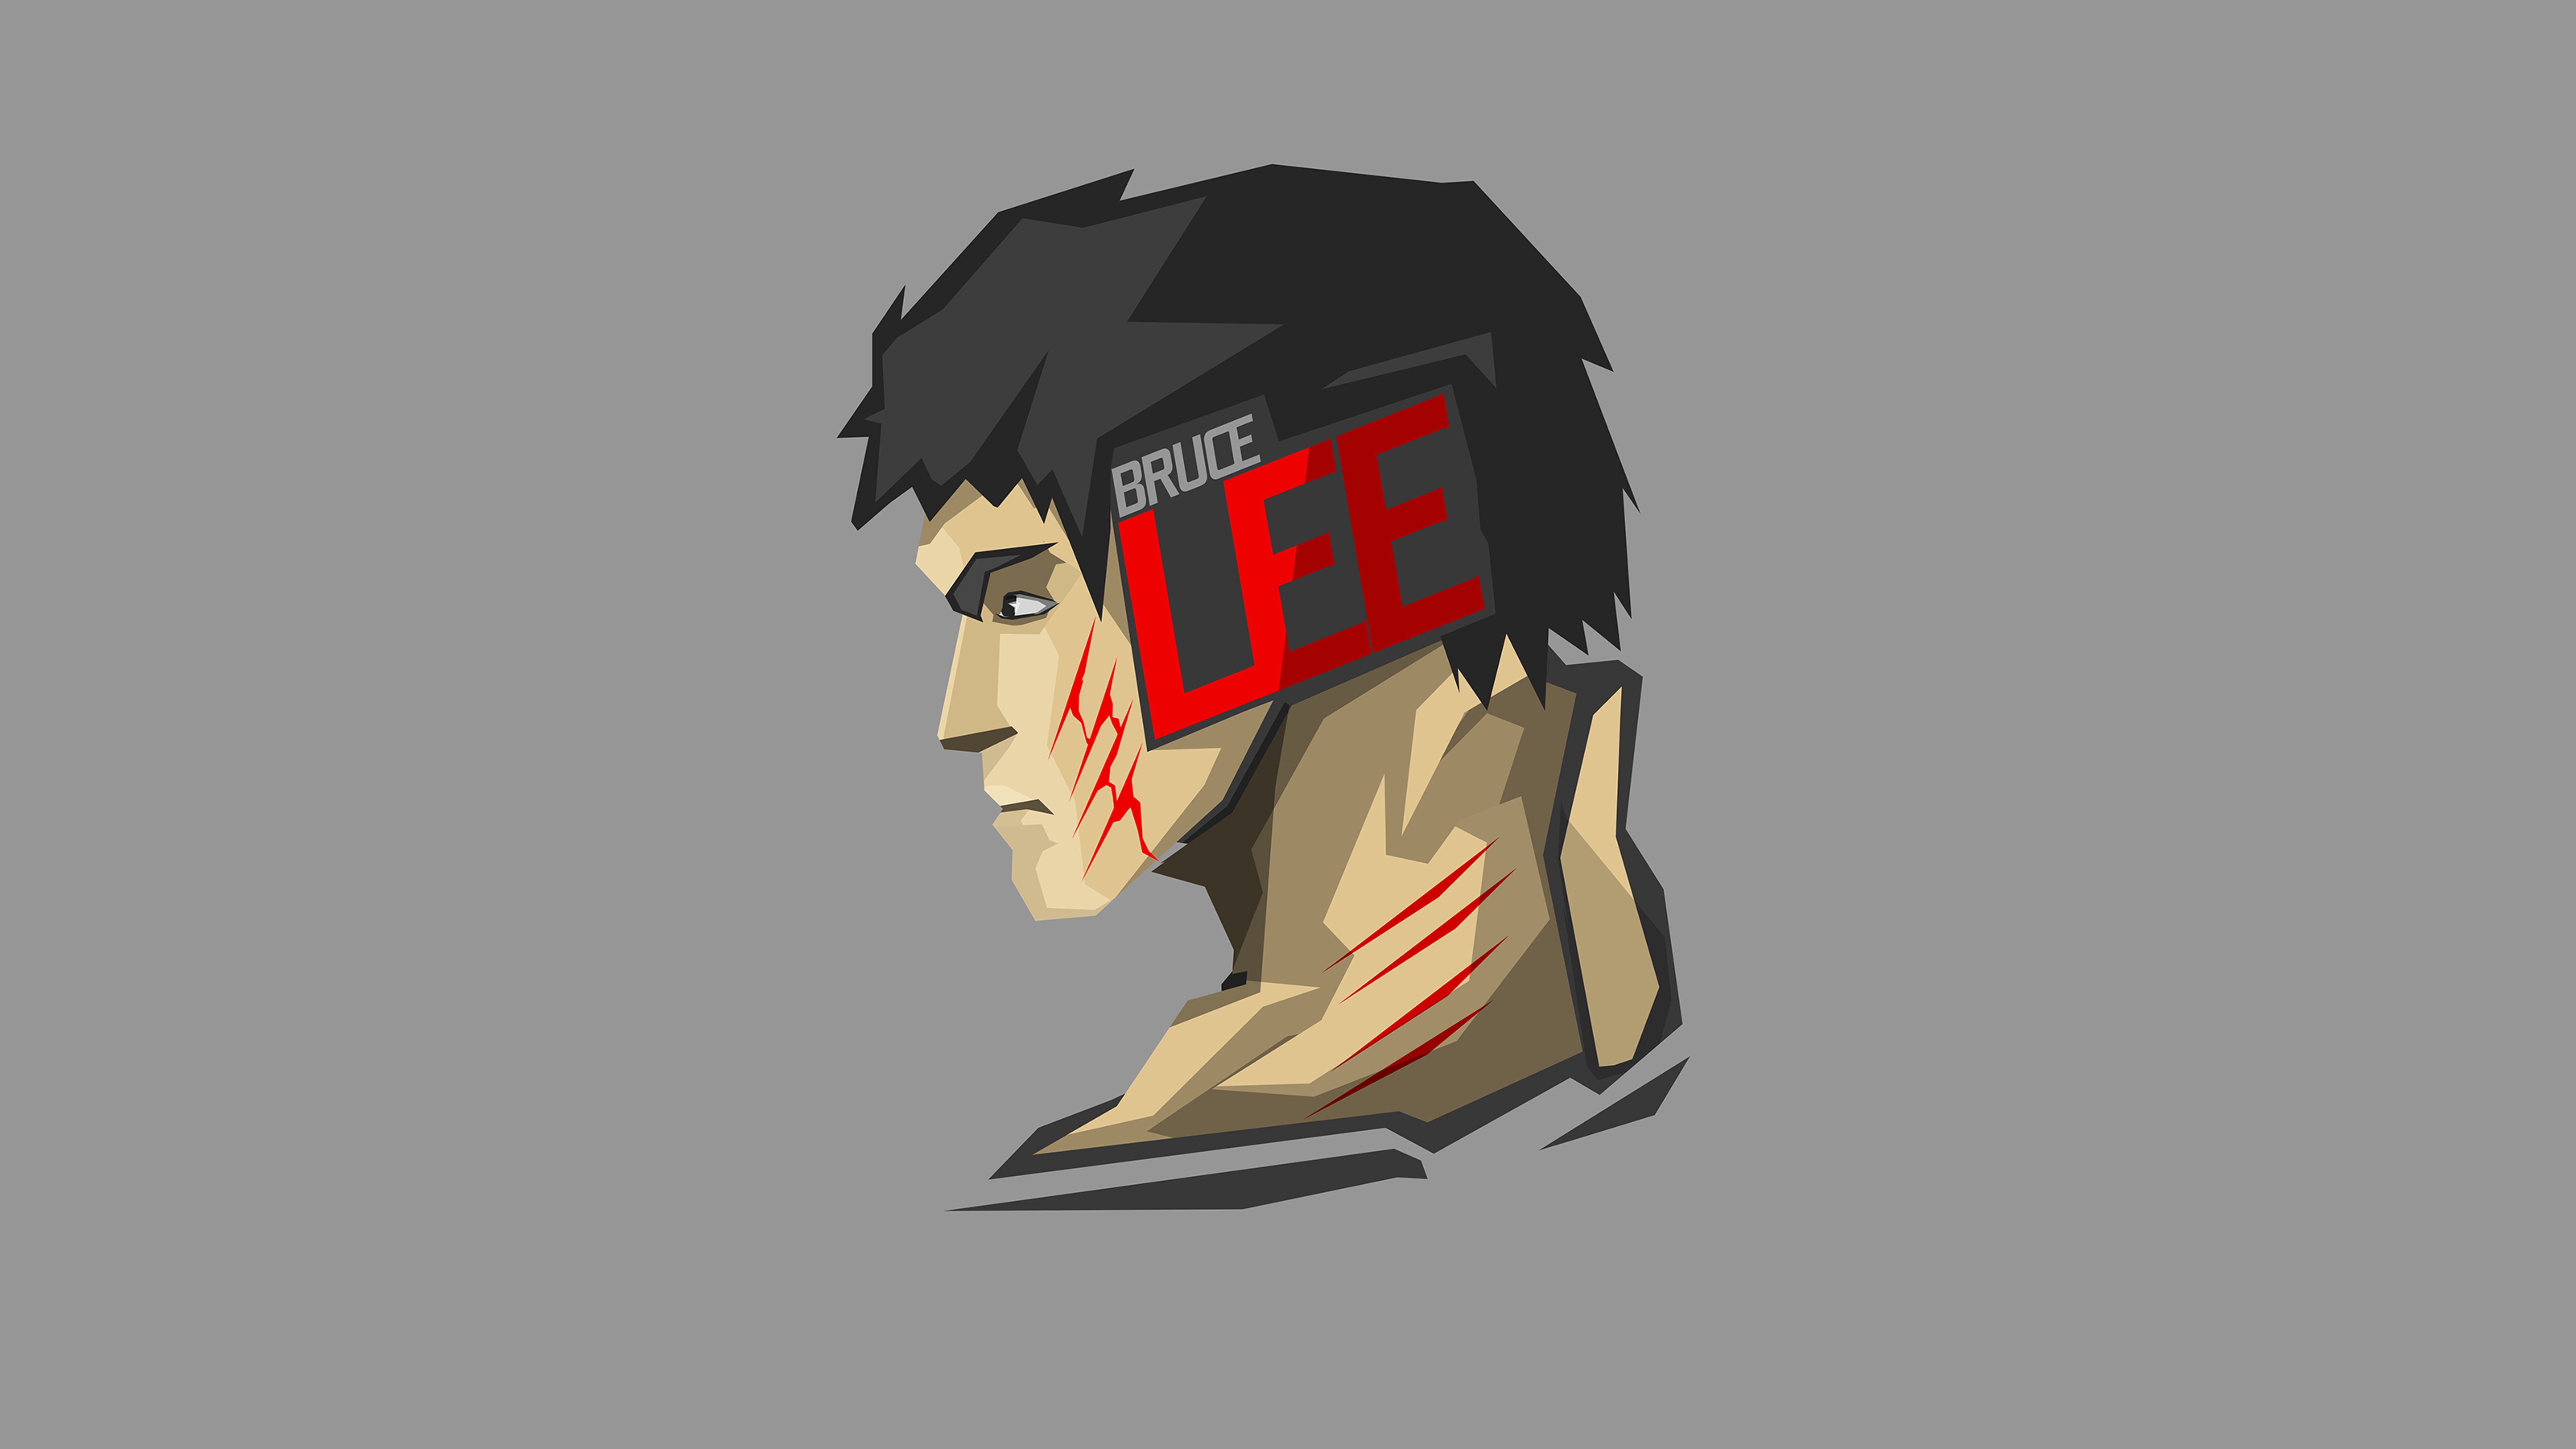 Free download wallpaper Celebrity, Bruce Lee on your PC desktop